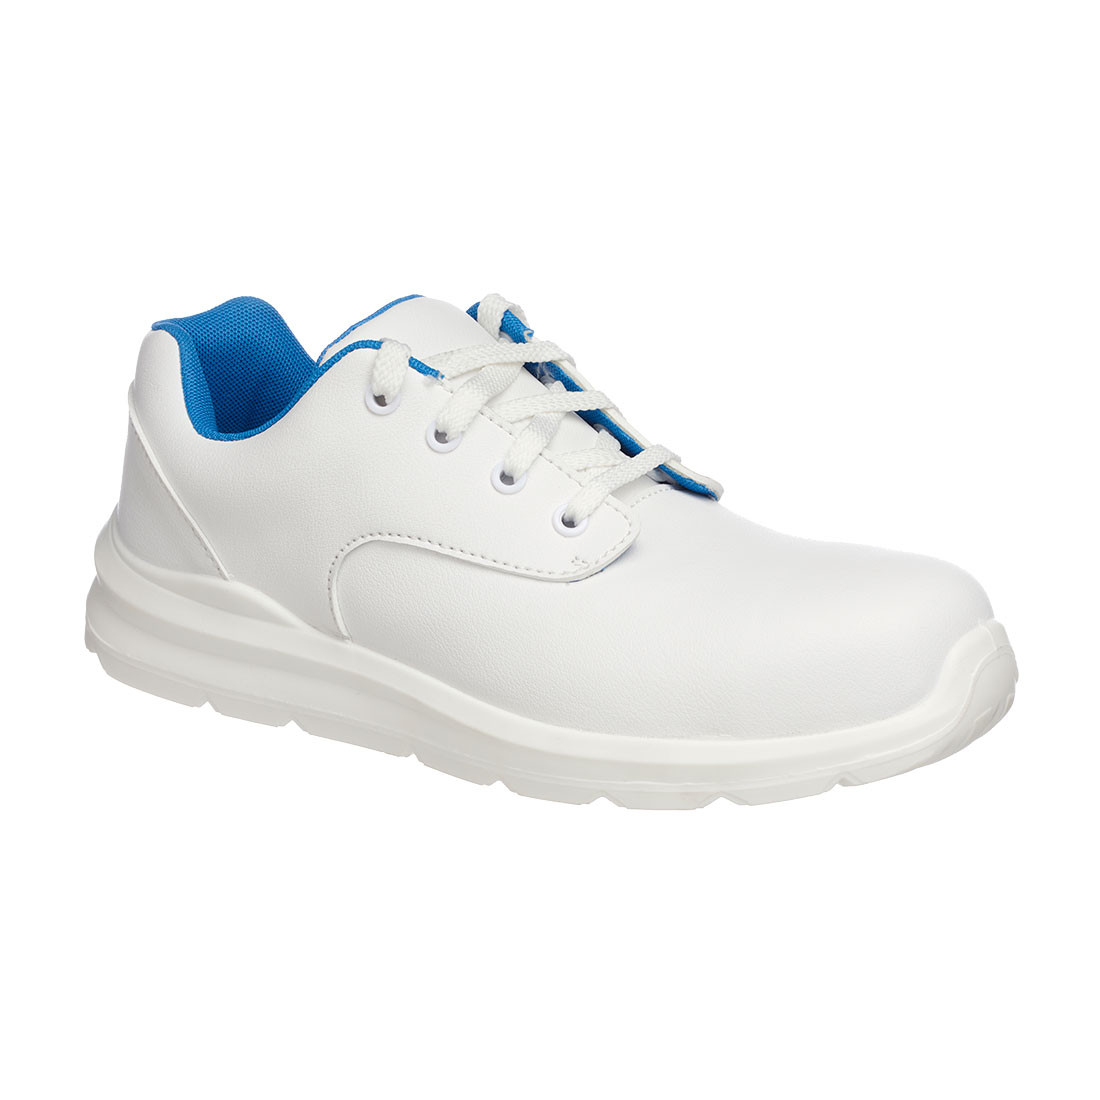 PantofI de protectie cu siret Portwest Compositelite - Incaltaminte de protectie | Bocanci, Pantofi, Sandale, Cizme